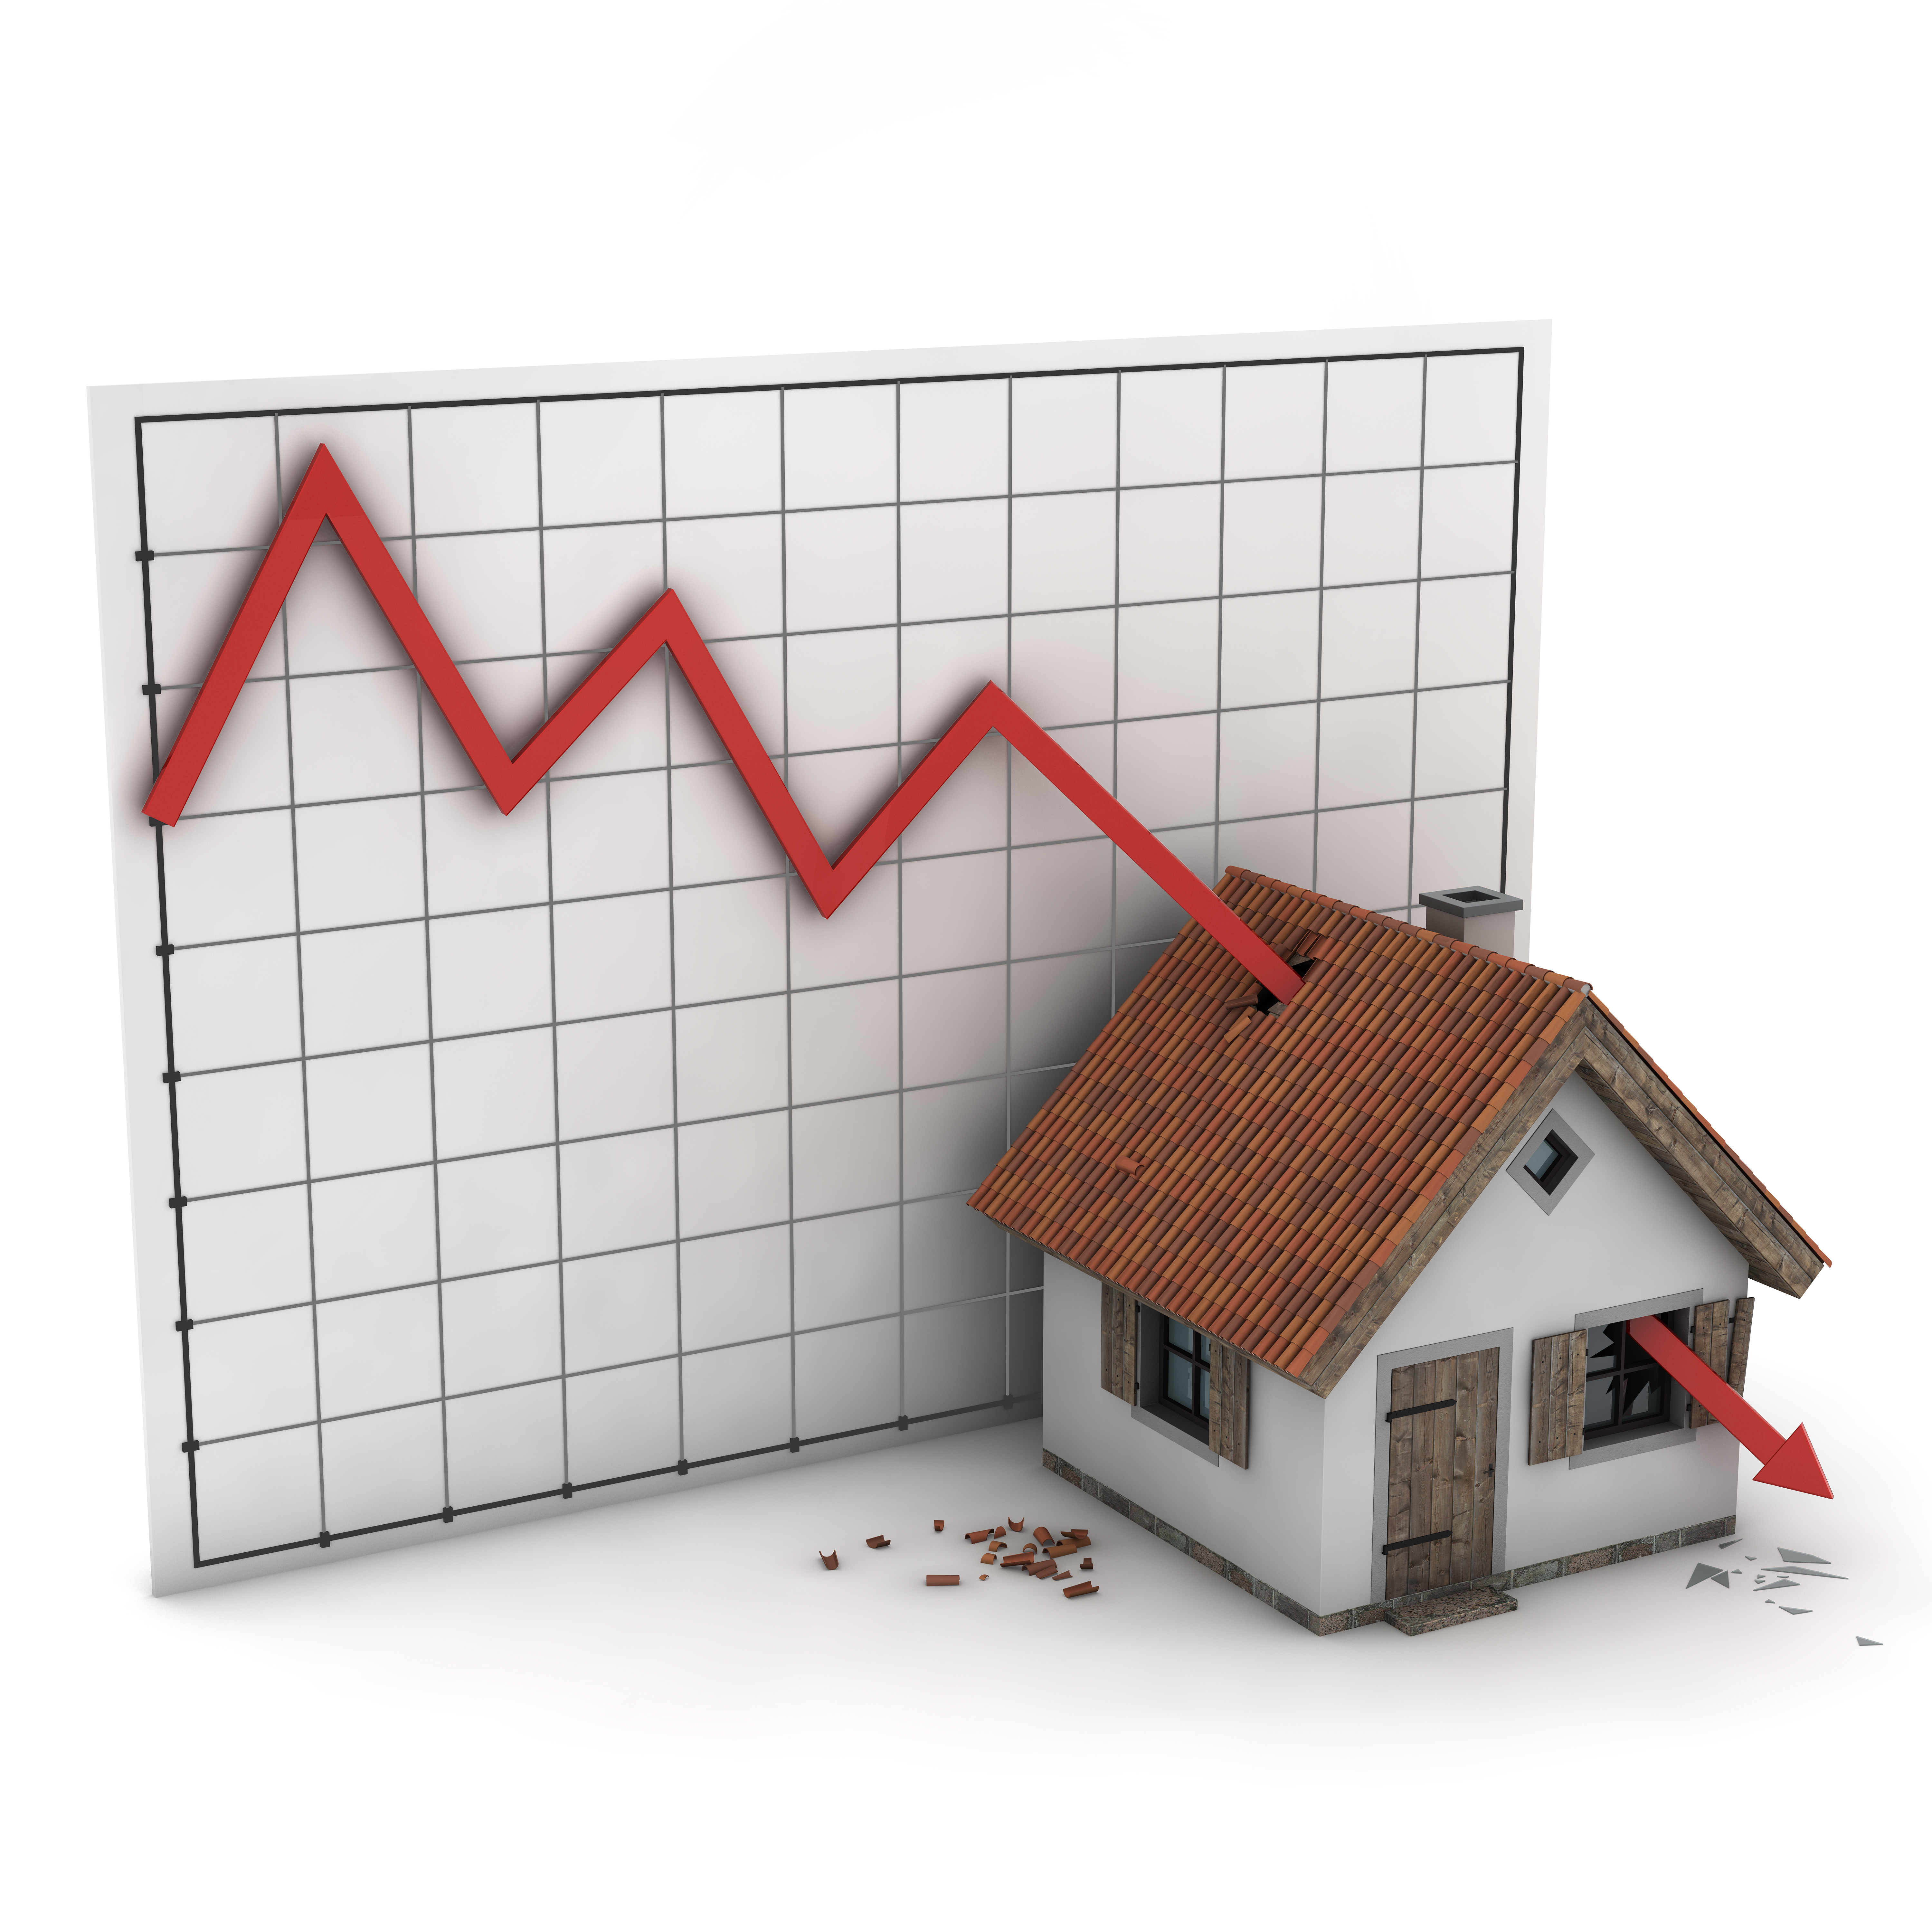 Цены на жилье снижаются. Рынок недвижимости. Ипотечный рынок. Кризис жилищного строительства. Инвестировать в недвижимость.